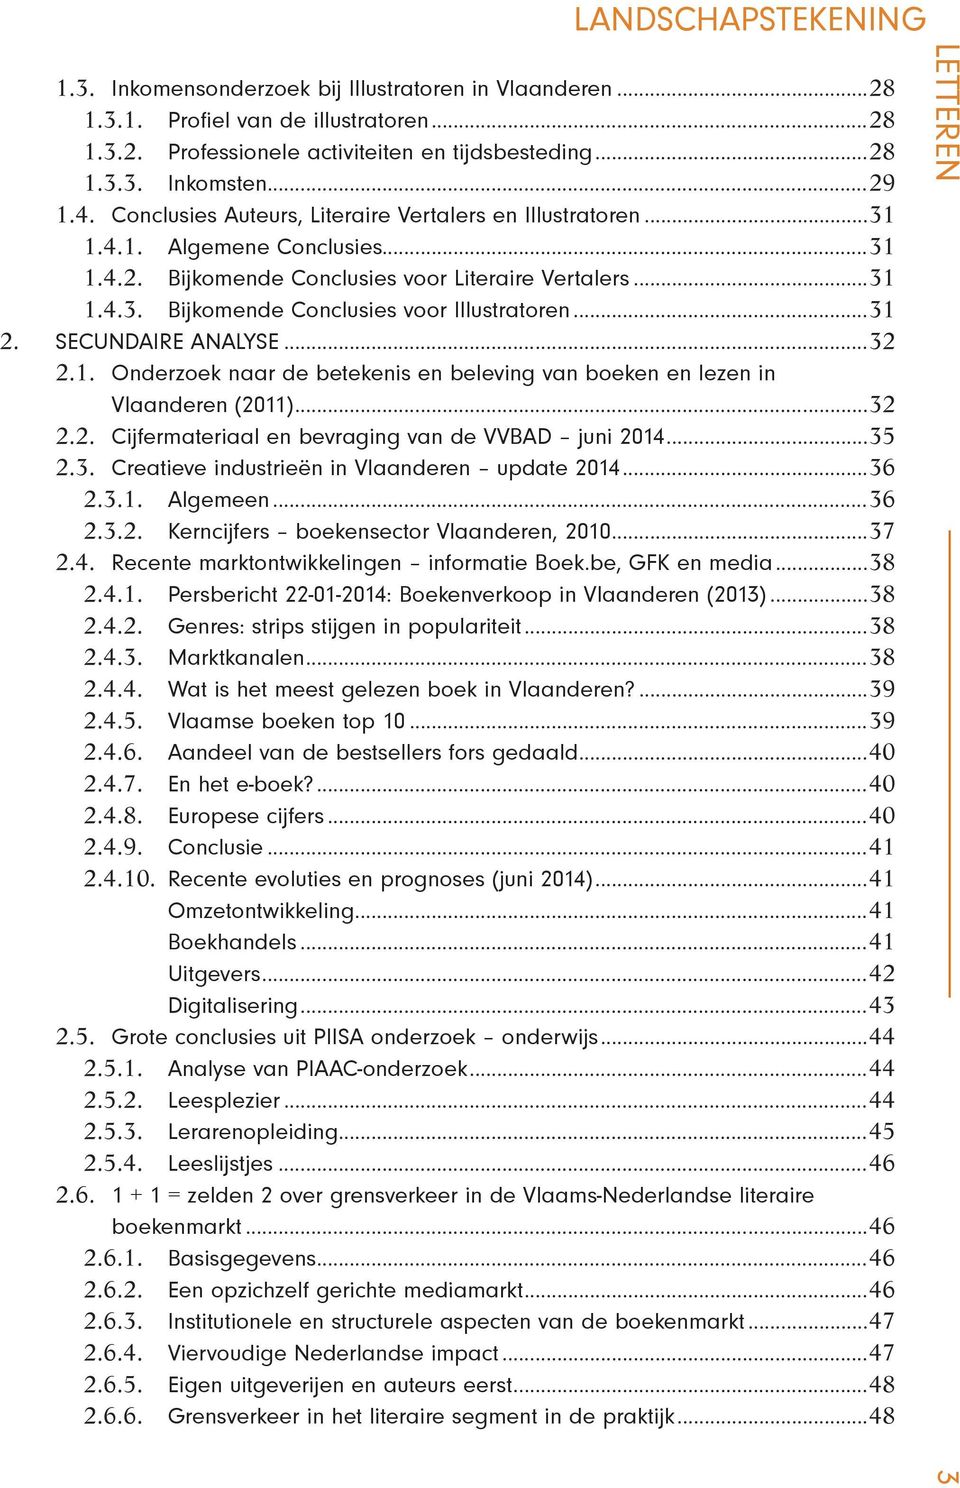 ..31 2. SECUNDAIRE ANALYSE...32 2.1. Onderzoek naar de betekenis en beleving van boeken en lezen in Vlaanderen (2011)...32 2.2. Cijfermateriaal en bevraging van de VVBAD juni 2014...35 2.3. Creatieve industrieën in Vlaanderen update 2014.